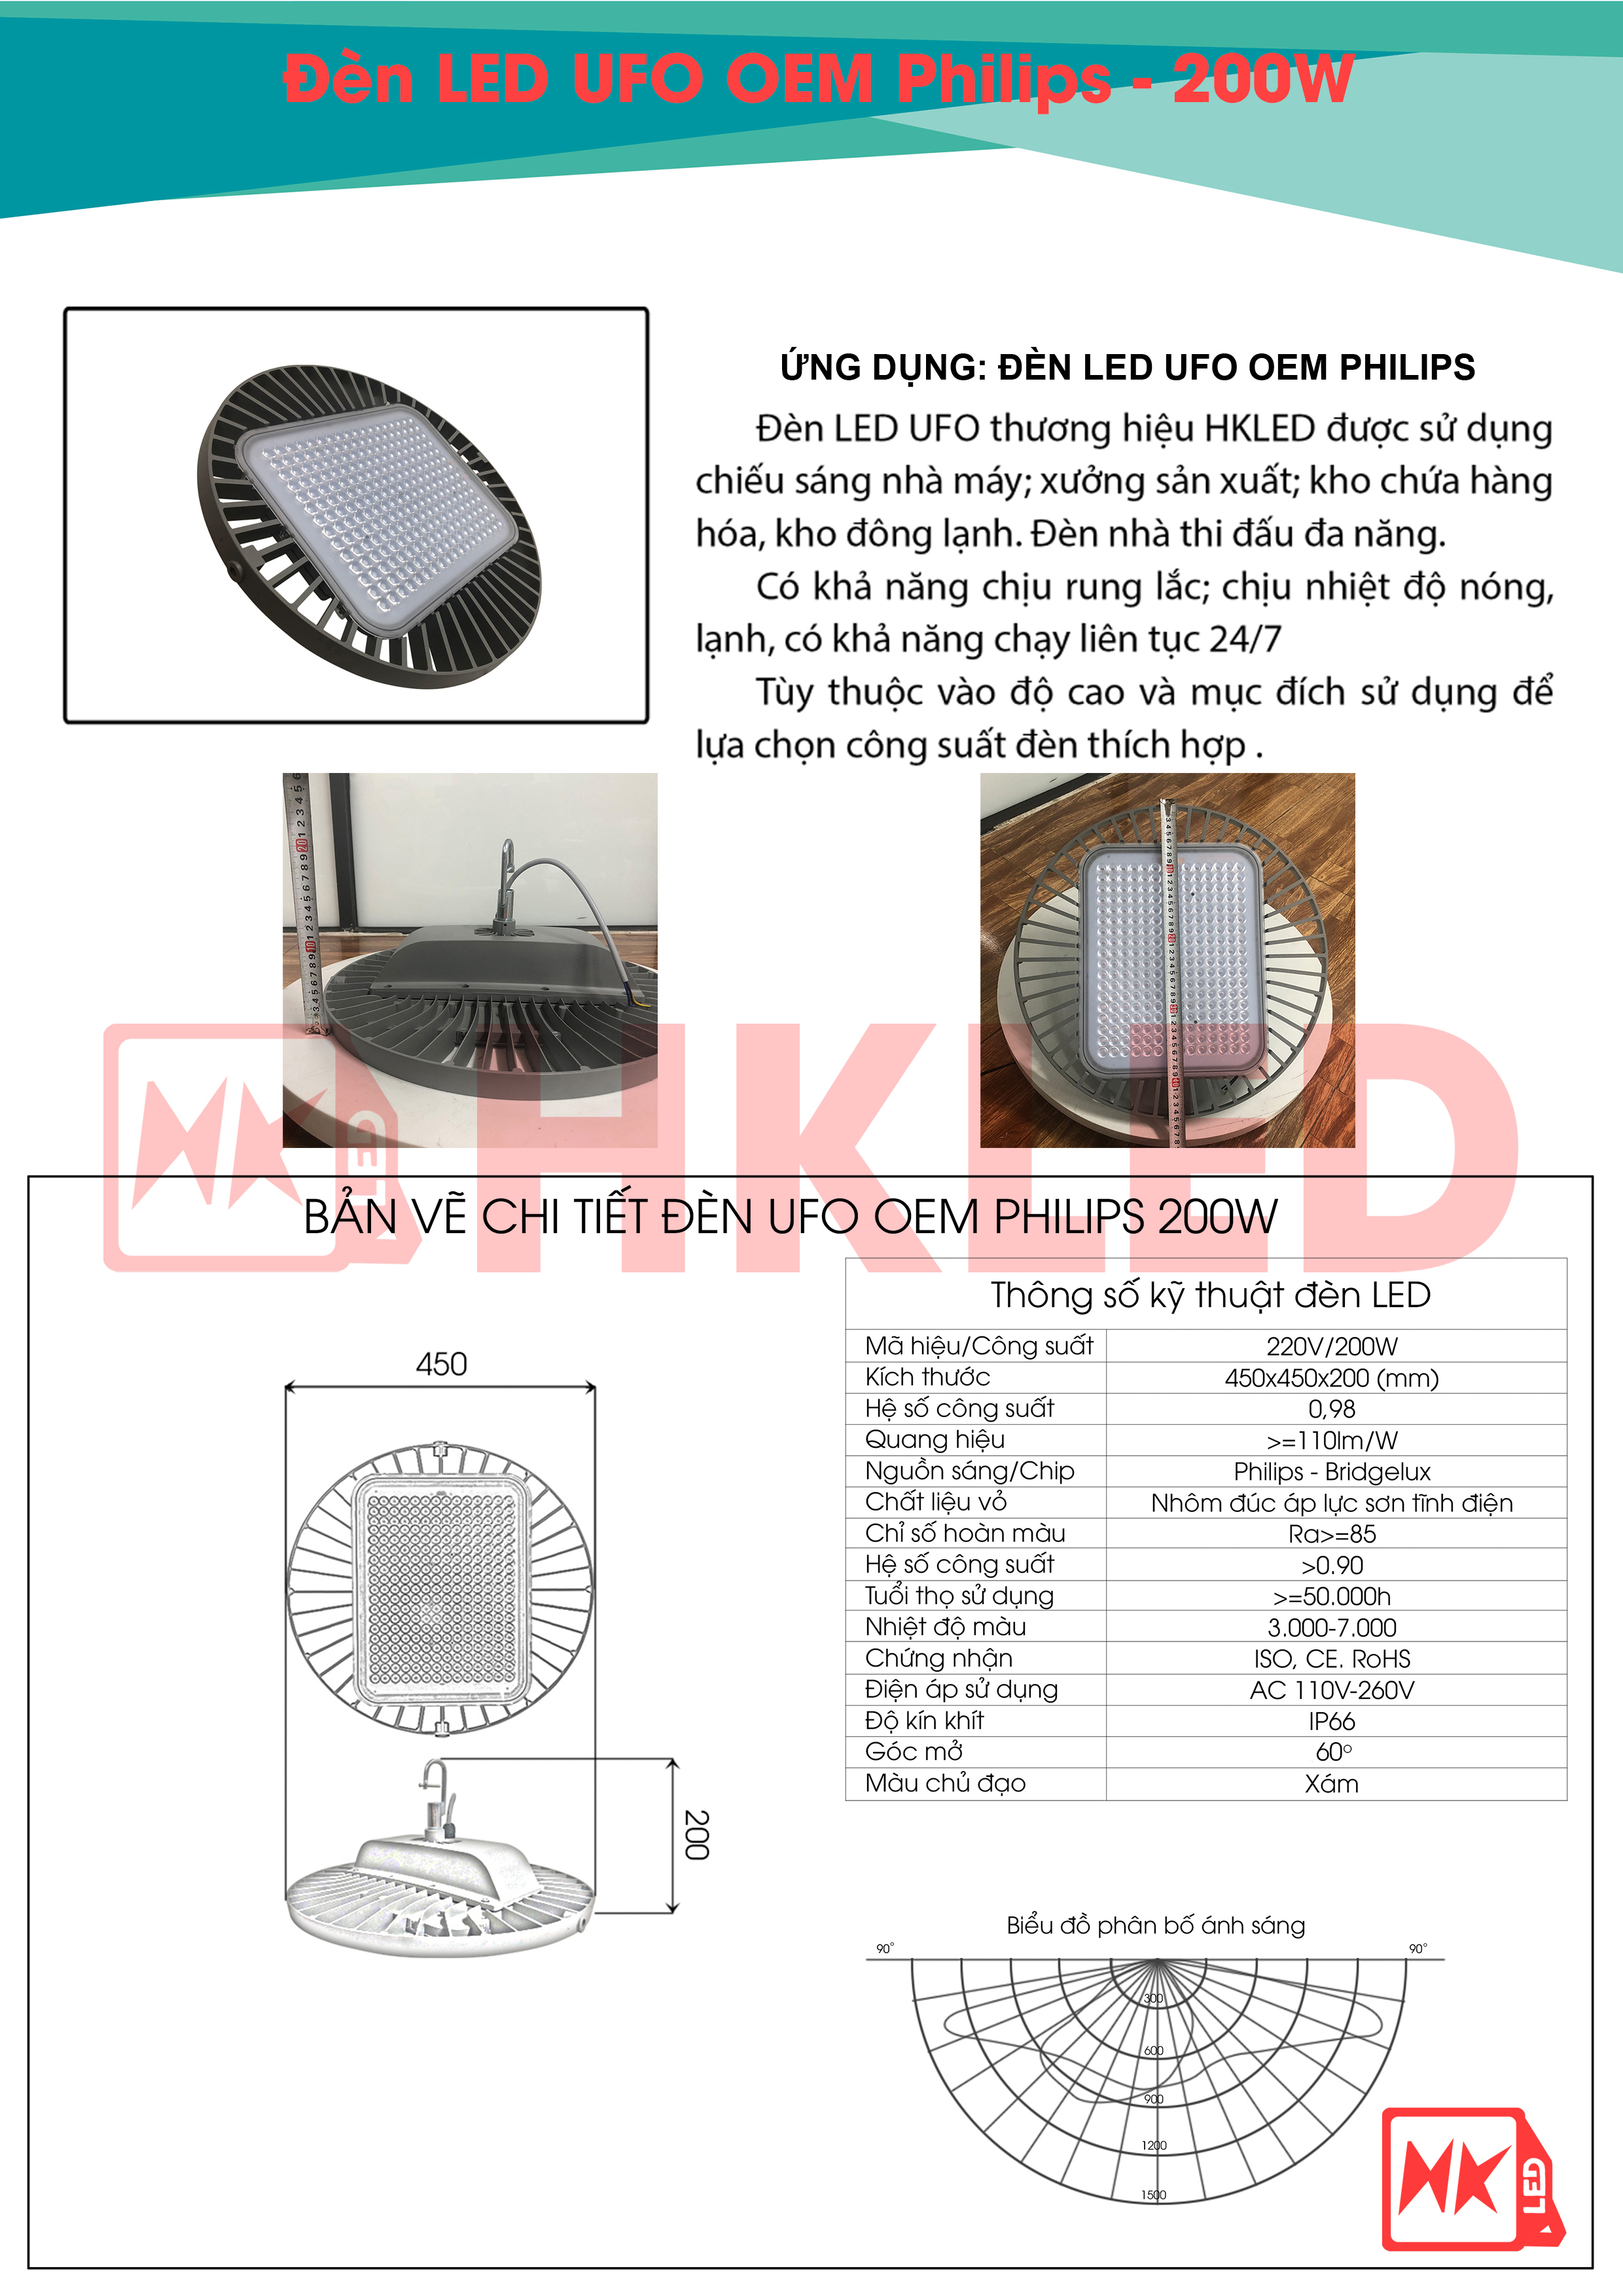 Ứng dụng, bản vẽ chi tiết và thông số kỹ thuật đèn UFO Nhà xưởng OEM Philips 200W